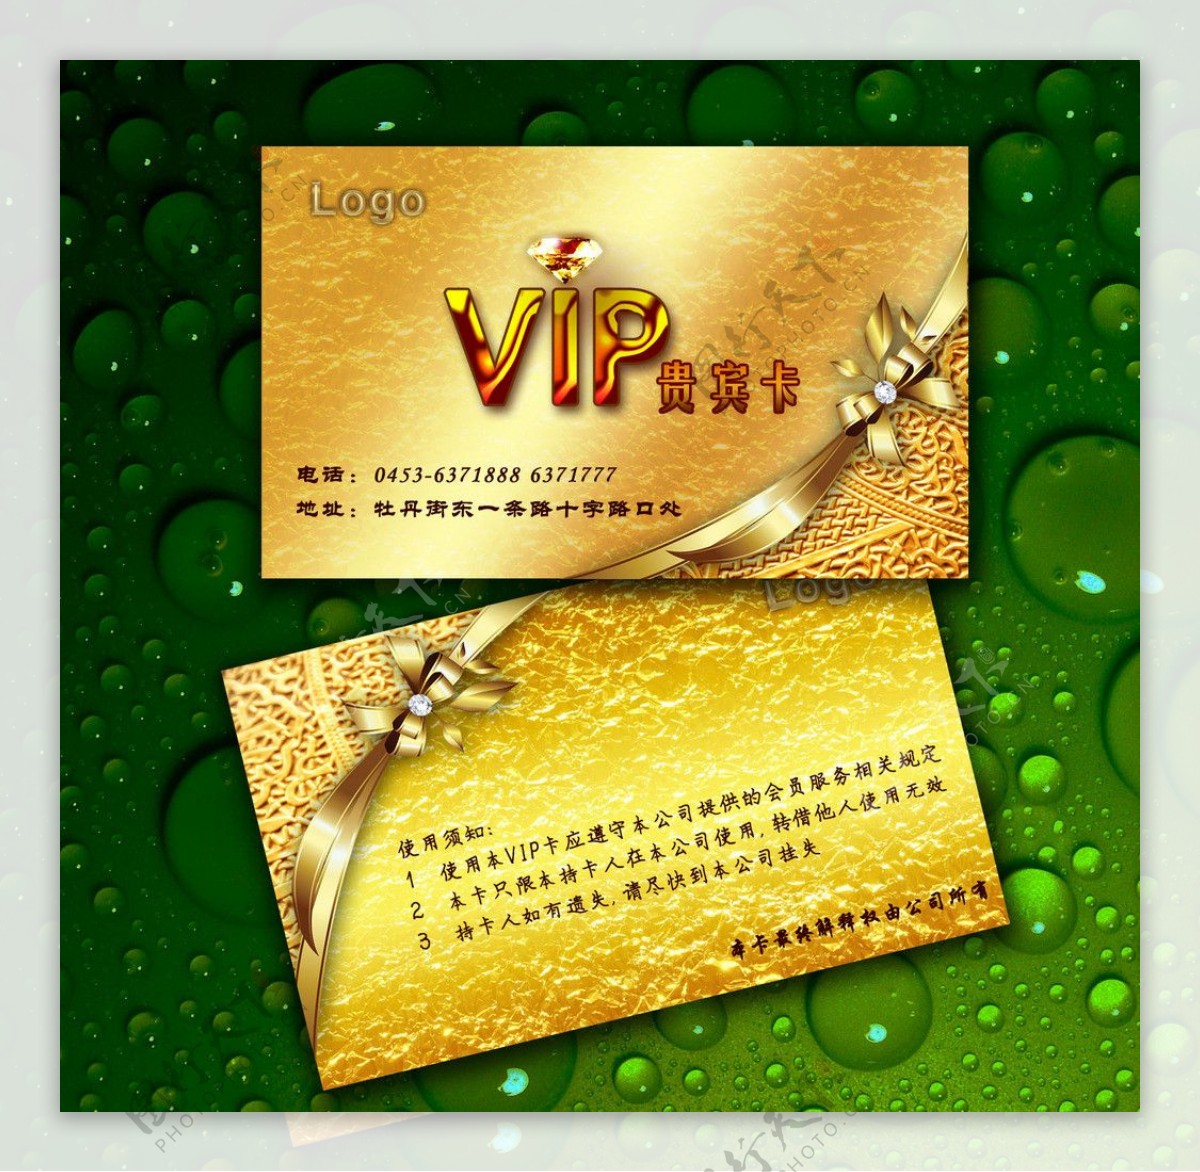 VIP卡模版素材图片